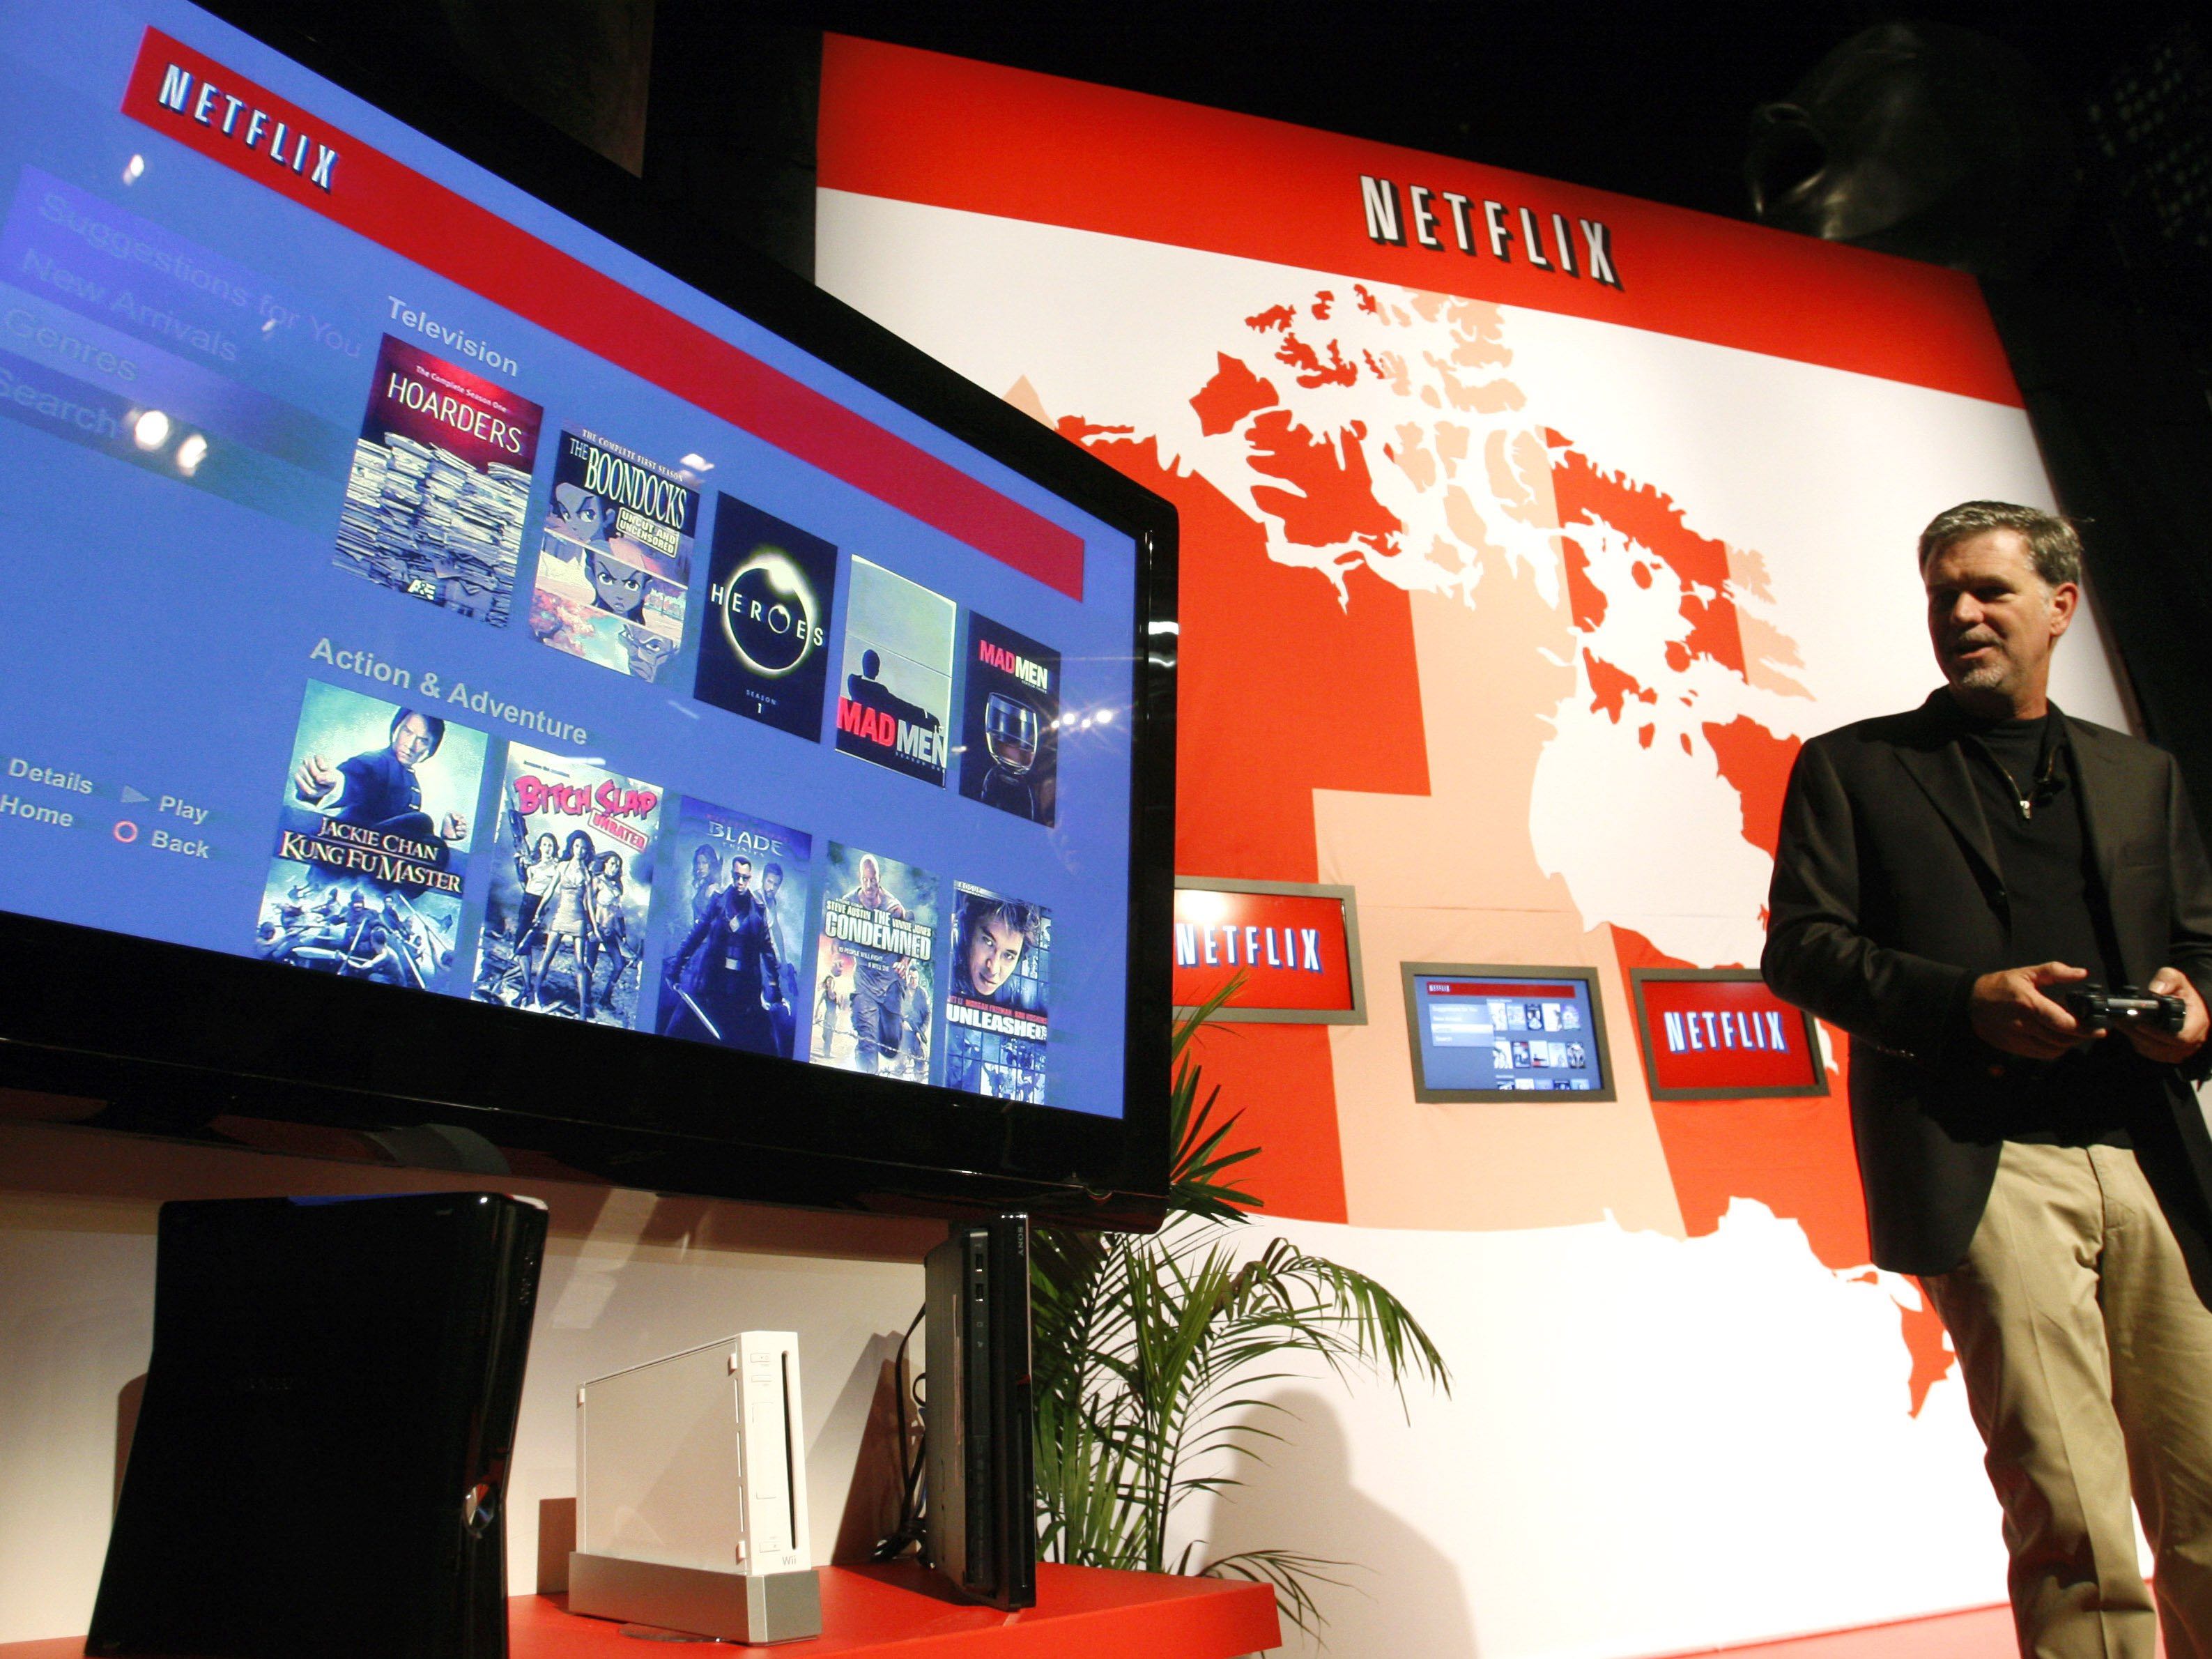 Netflix đang bước vào thị trường Việt Nam, cạnh tranh với các thương hiệu như Viettel, VNPT hay FPT tại nước ta - Ảnh: Reuters